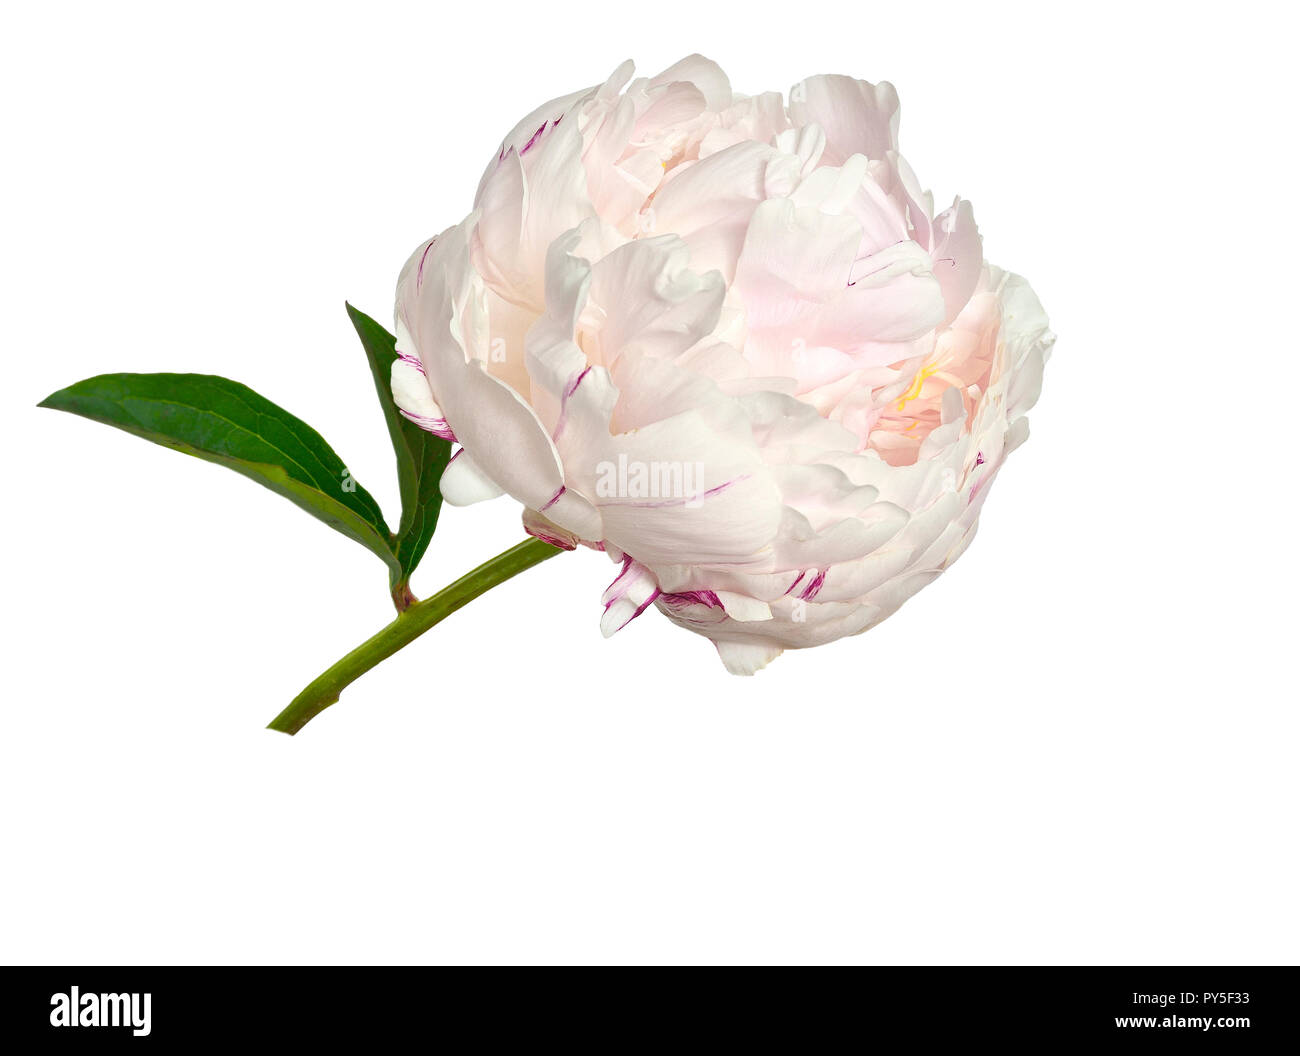 Sanfte rosa mit cremiger Pfingstrose mit flauschigen, rüschen Blüten Nahaufnahme, auf weißem Hintergrund. Romantische Blumenmuster Stockfoto